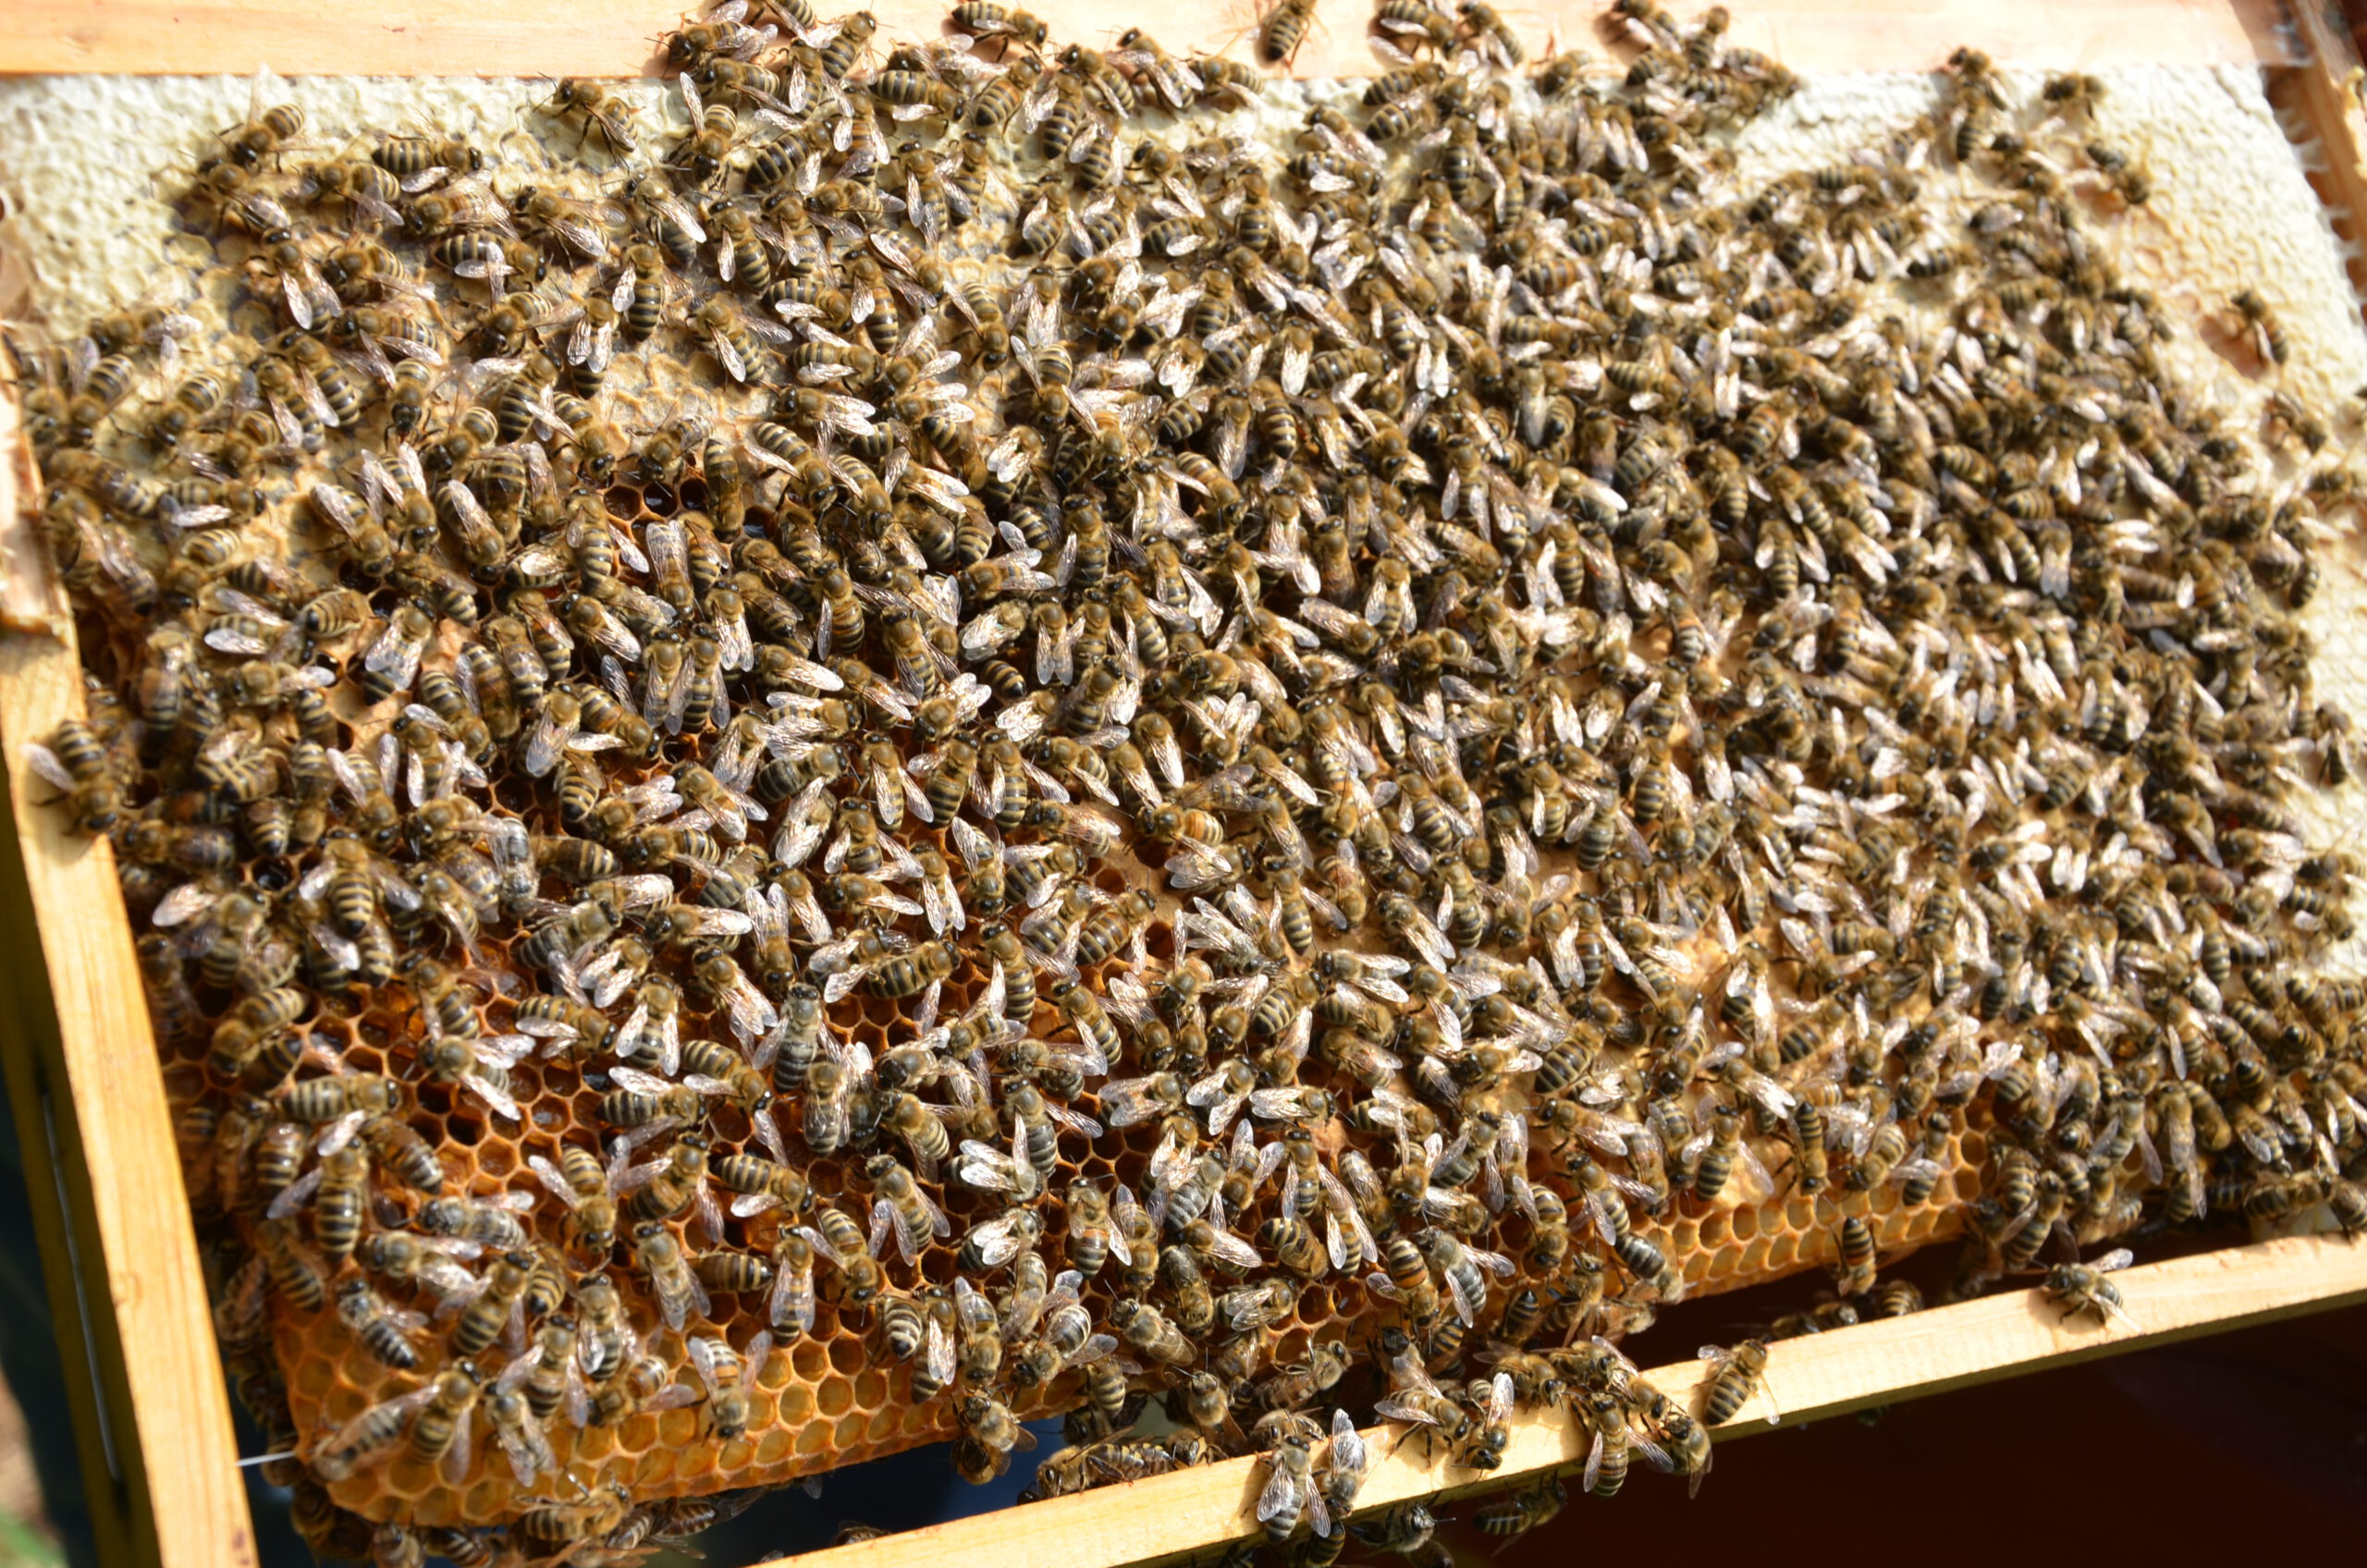 II. The Therapeutic Benefits of Beekeeping